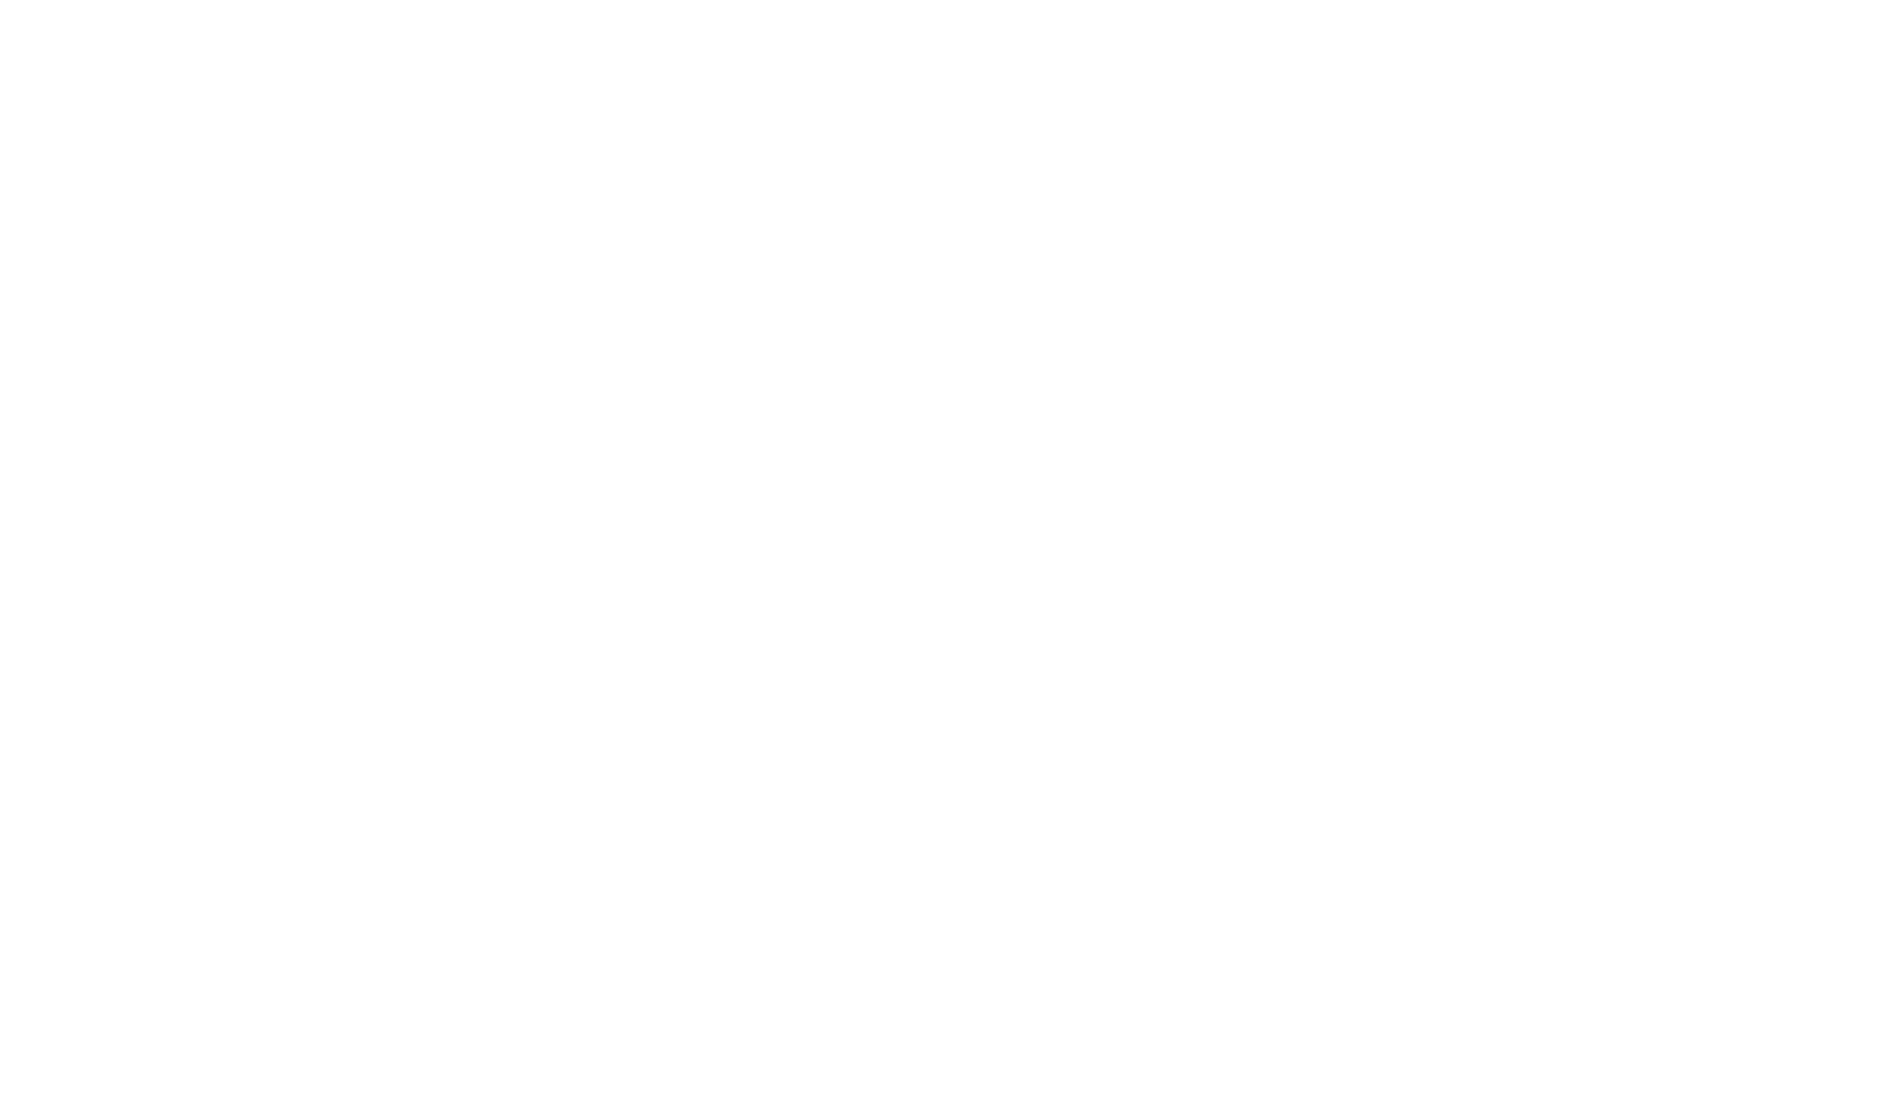 Les fabricants - logo client polytechnique